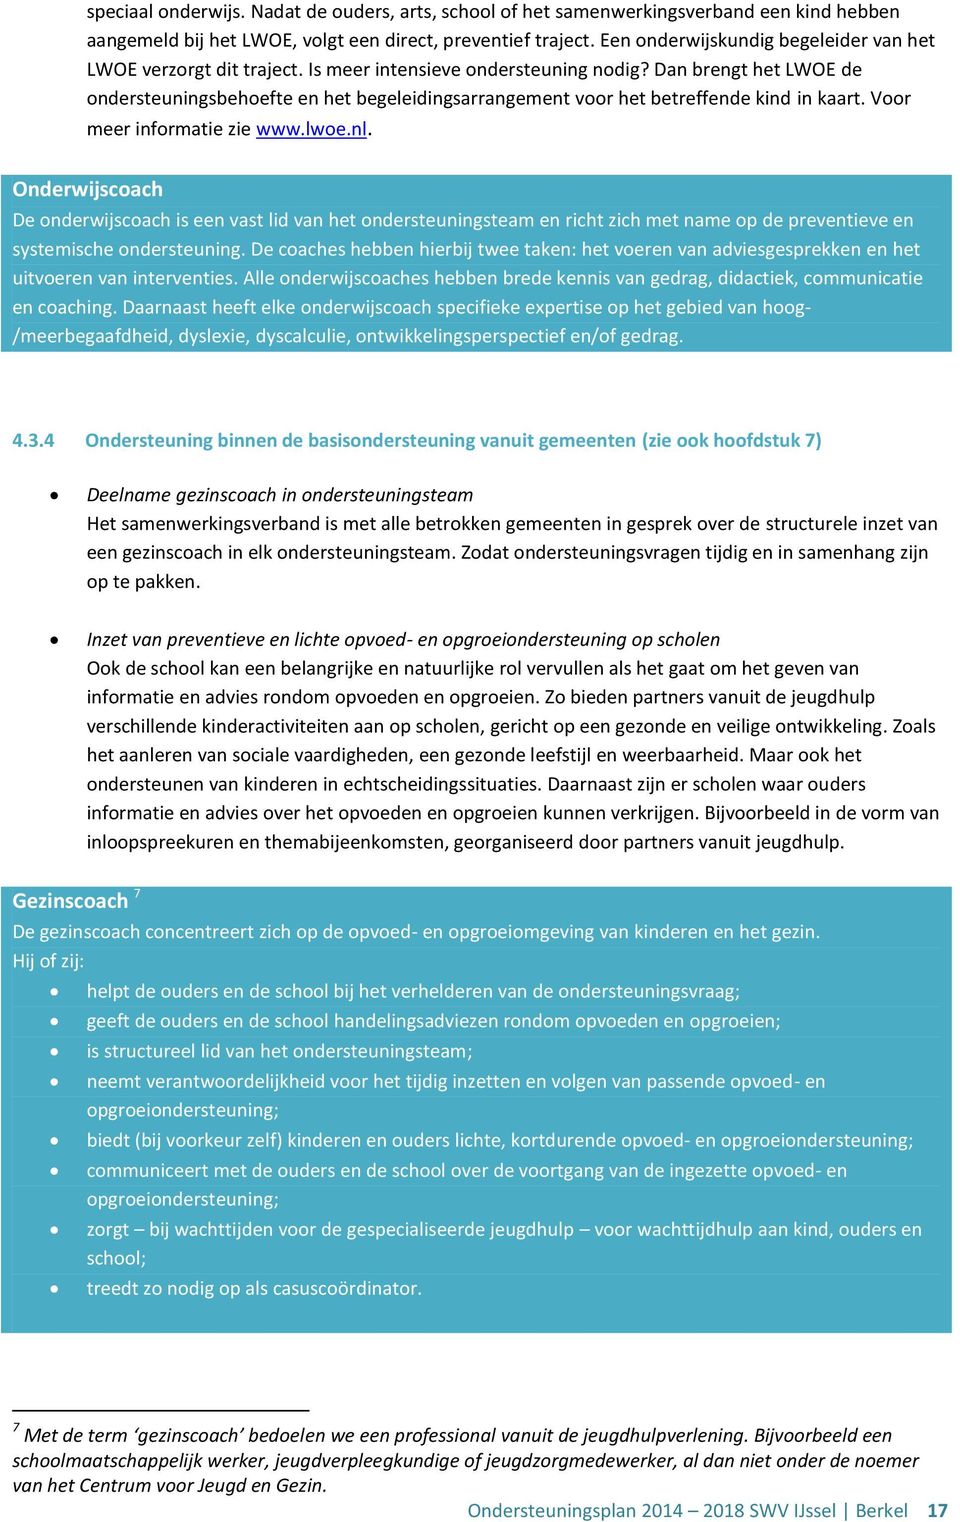 Dan brengt het LWOE de ondersteuningsbehoefte en het begeleidingsarrangement voor het betreffende kind in kaart. Voor meer informatie zie www.lwoe.nl.